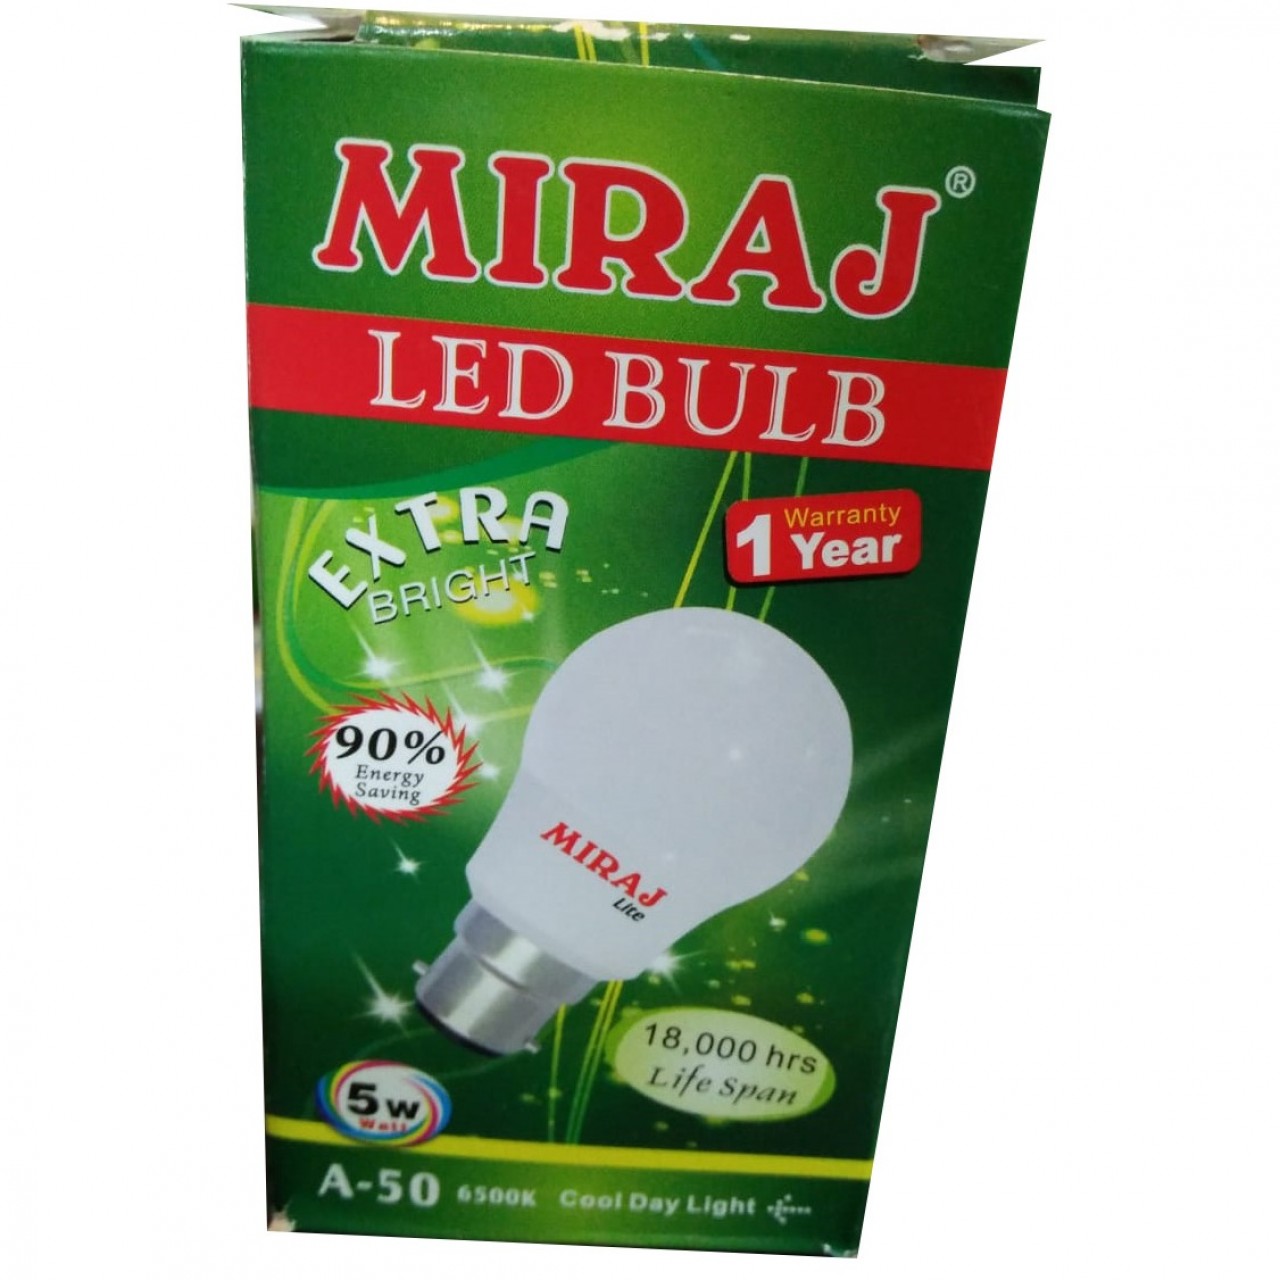 Miraj A-50 Extra Bright LED Bulb - 5W  - 1 Year Warranty